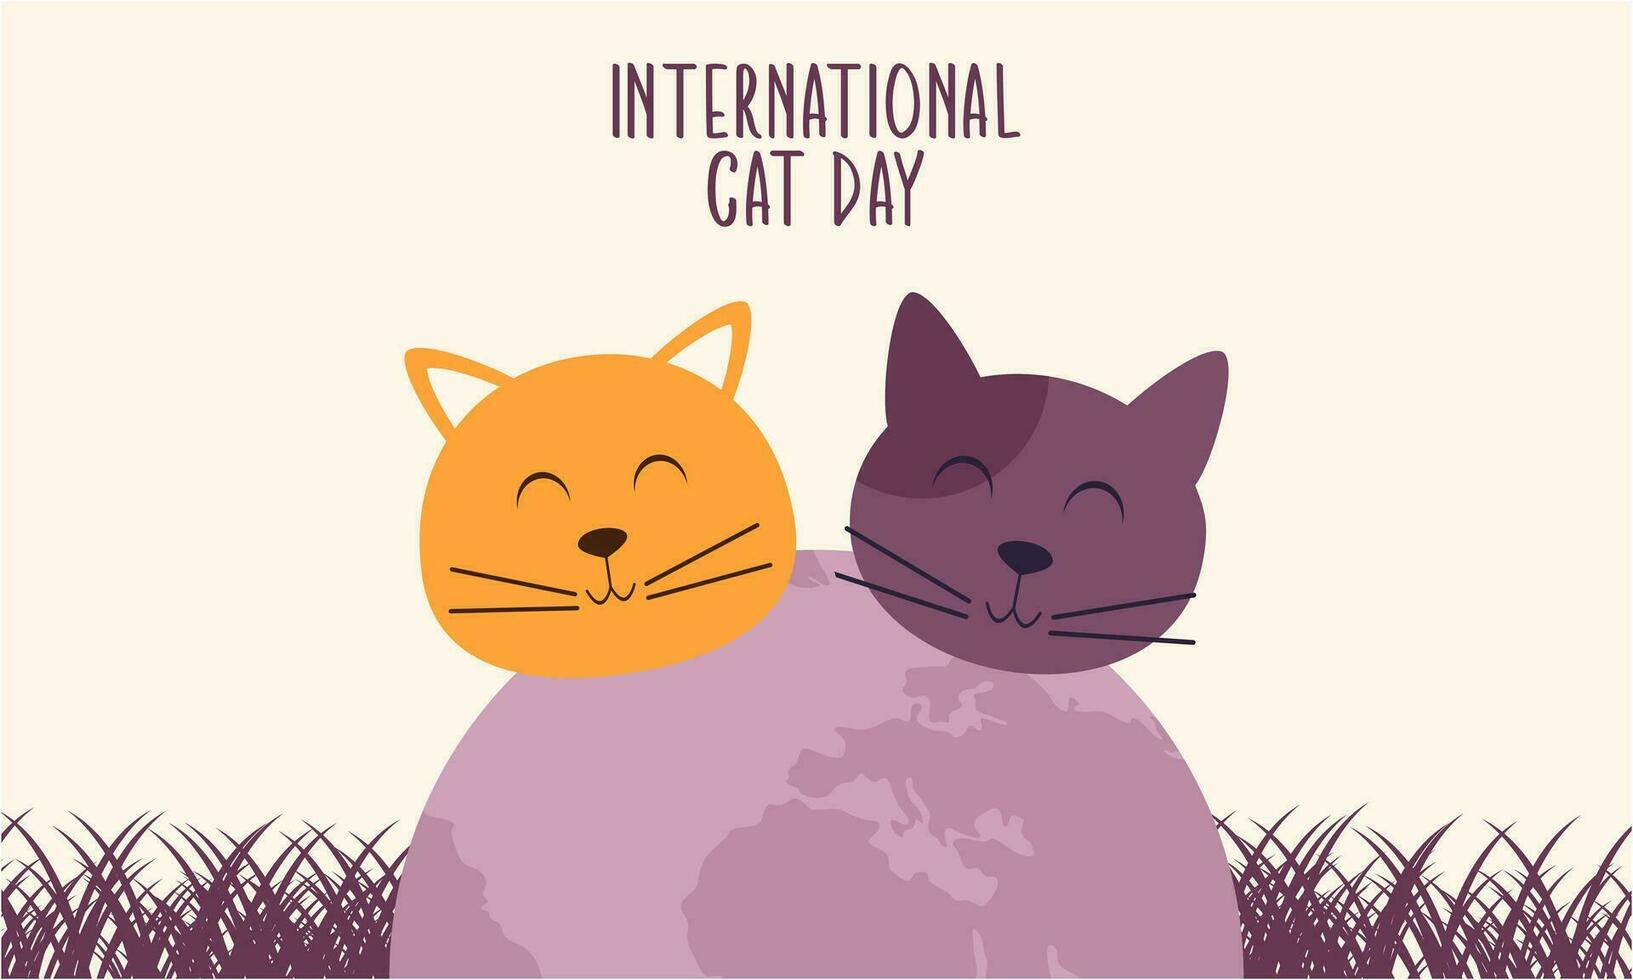 plat international chat journée Contexte vecteur